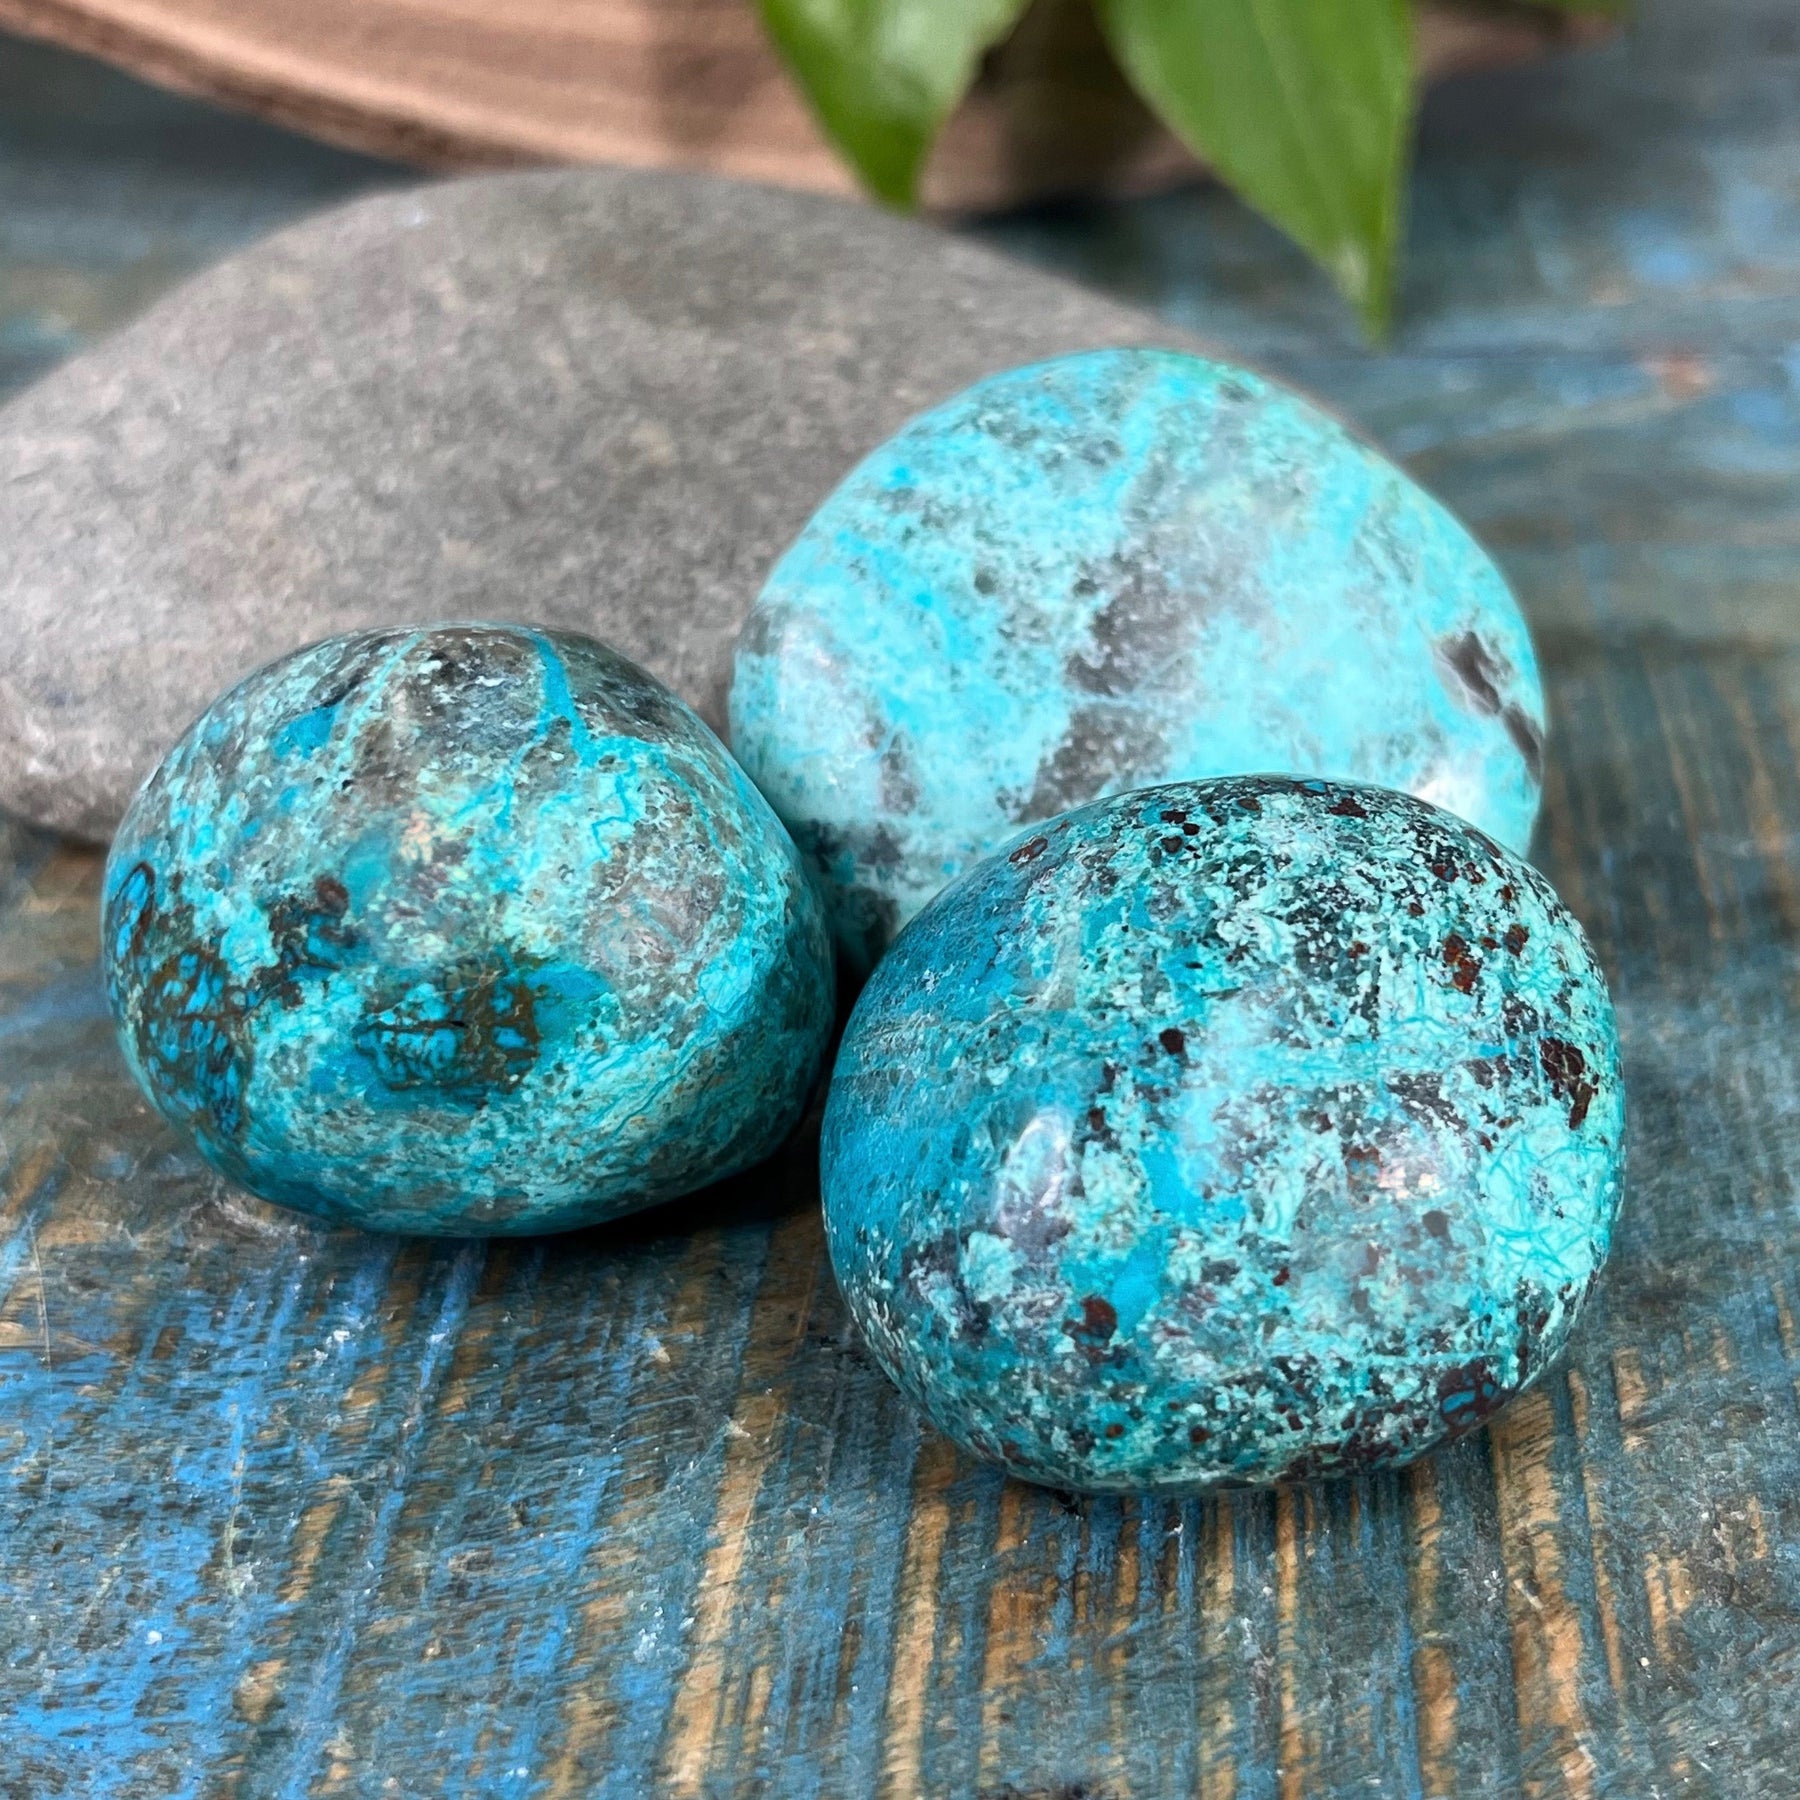 Chrysocolla stones